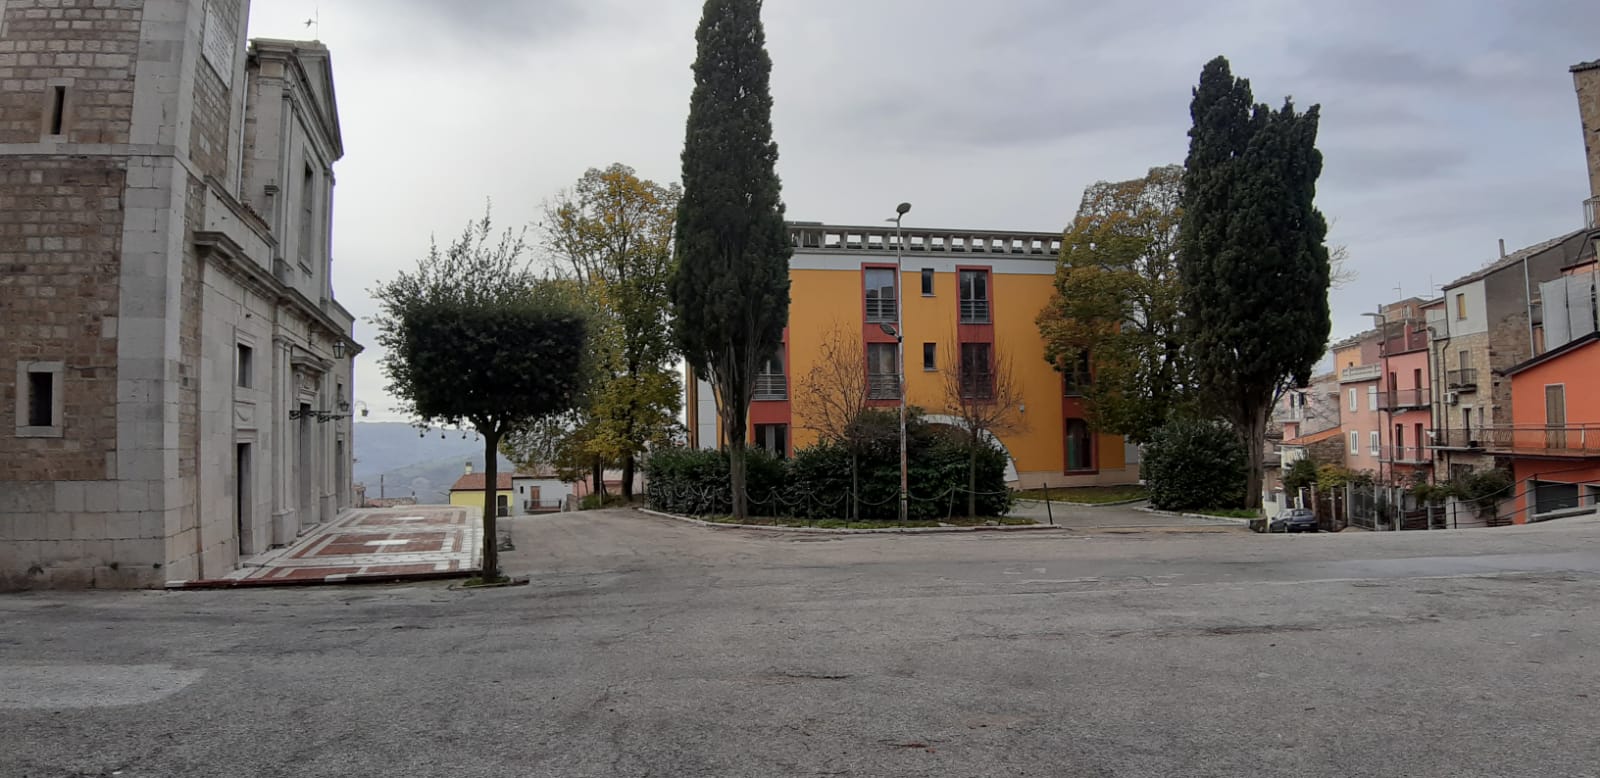 Parco della Rimembranza di Pietracatella (parco, commemorativo/ ai caduti della prima guerra mondiale) - Pietracatella (CB) 